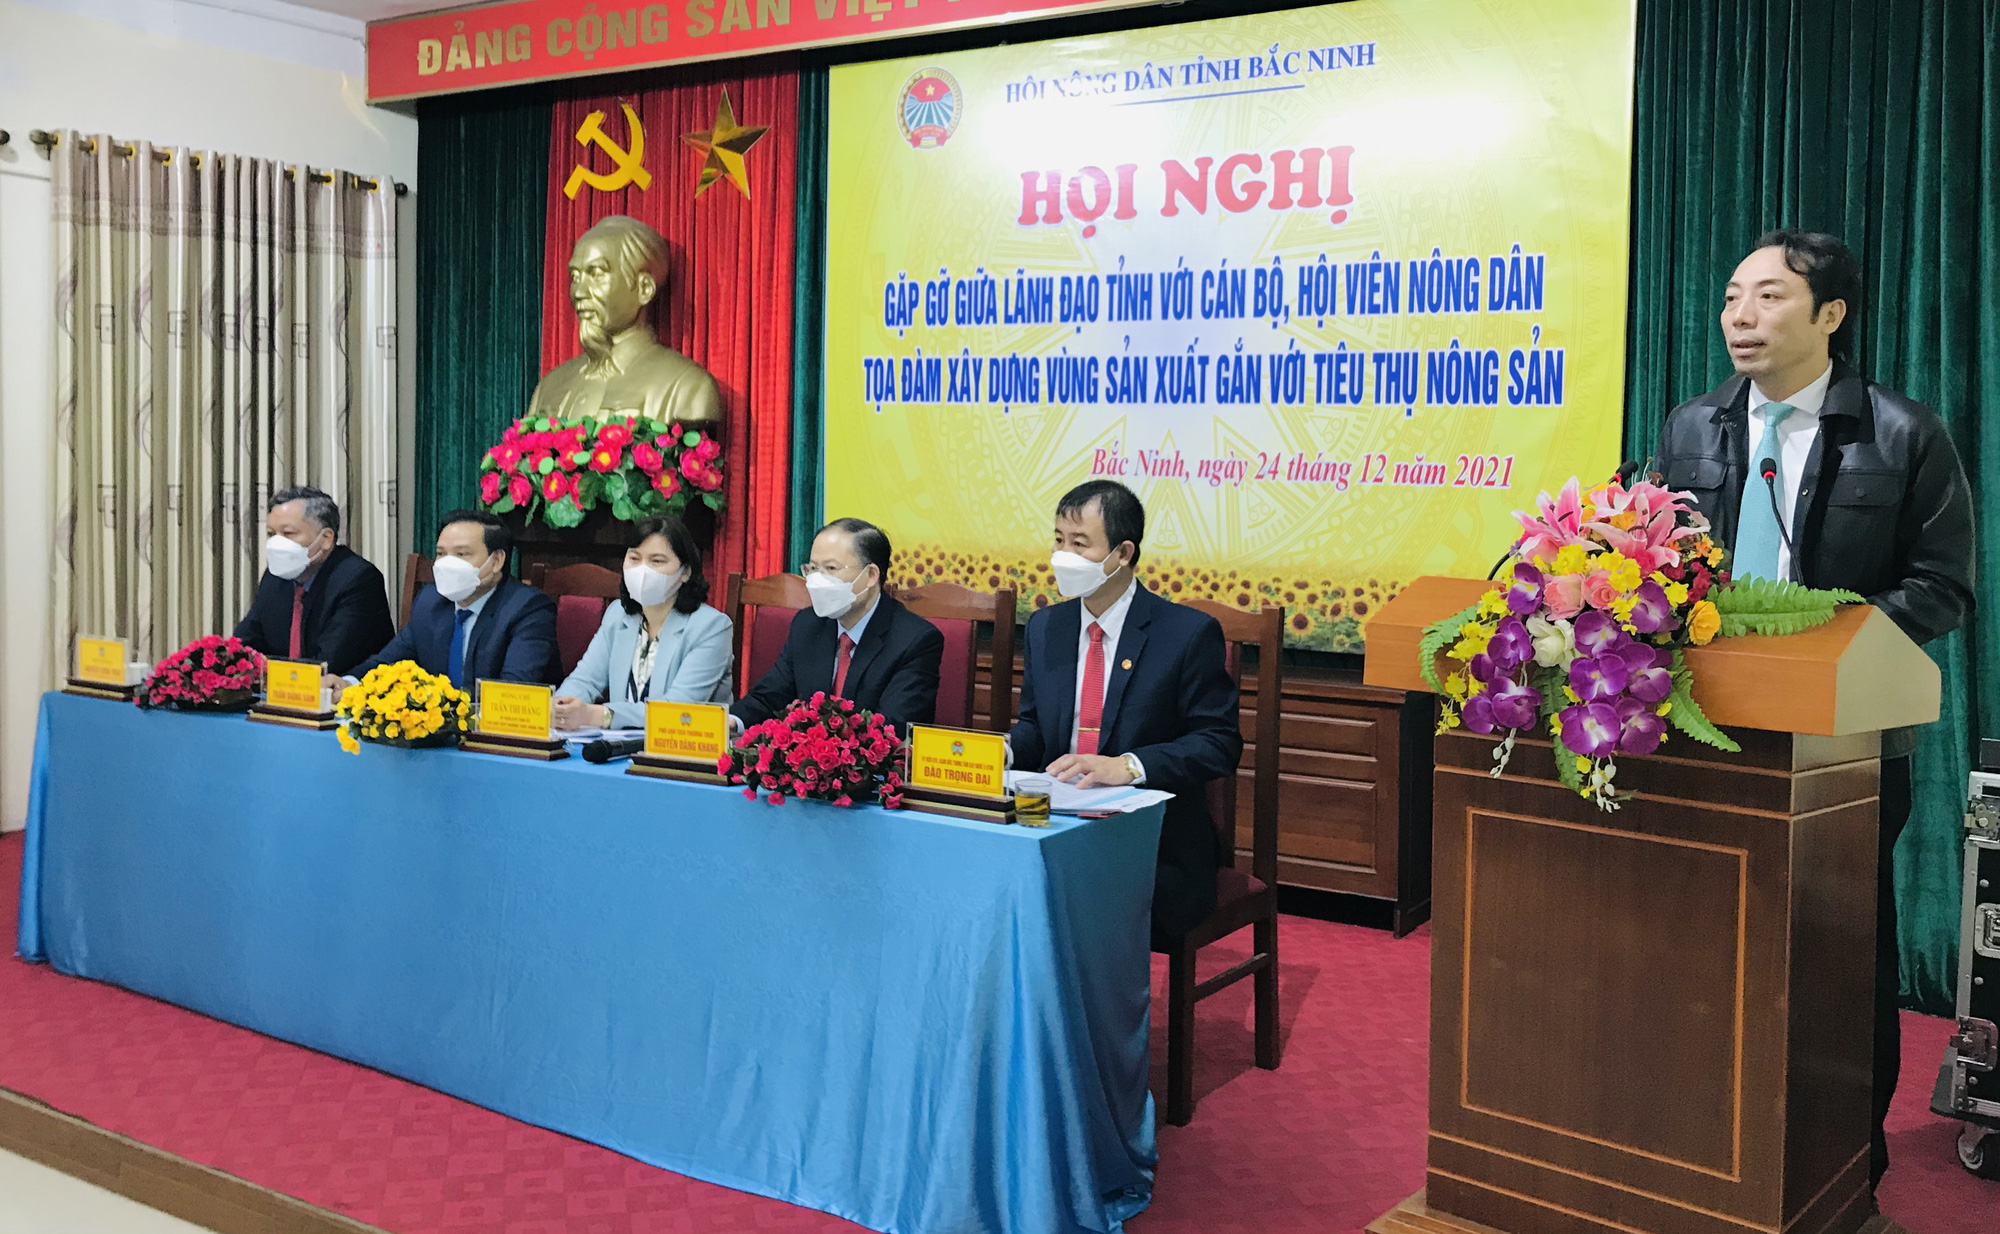 Bắc Ninh: Lãnh đạo tỉnh đối thoại, gỡ khó trong sản xuất nông nghiệp cho nông dân - Ảnh 2.